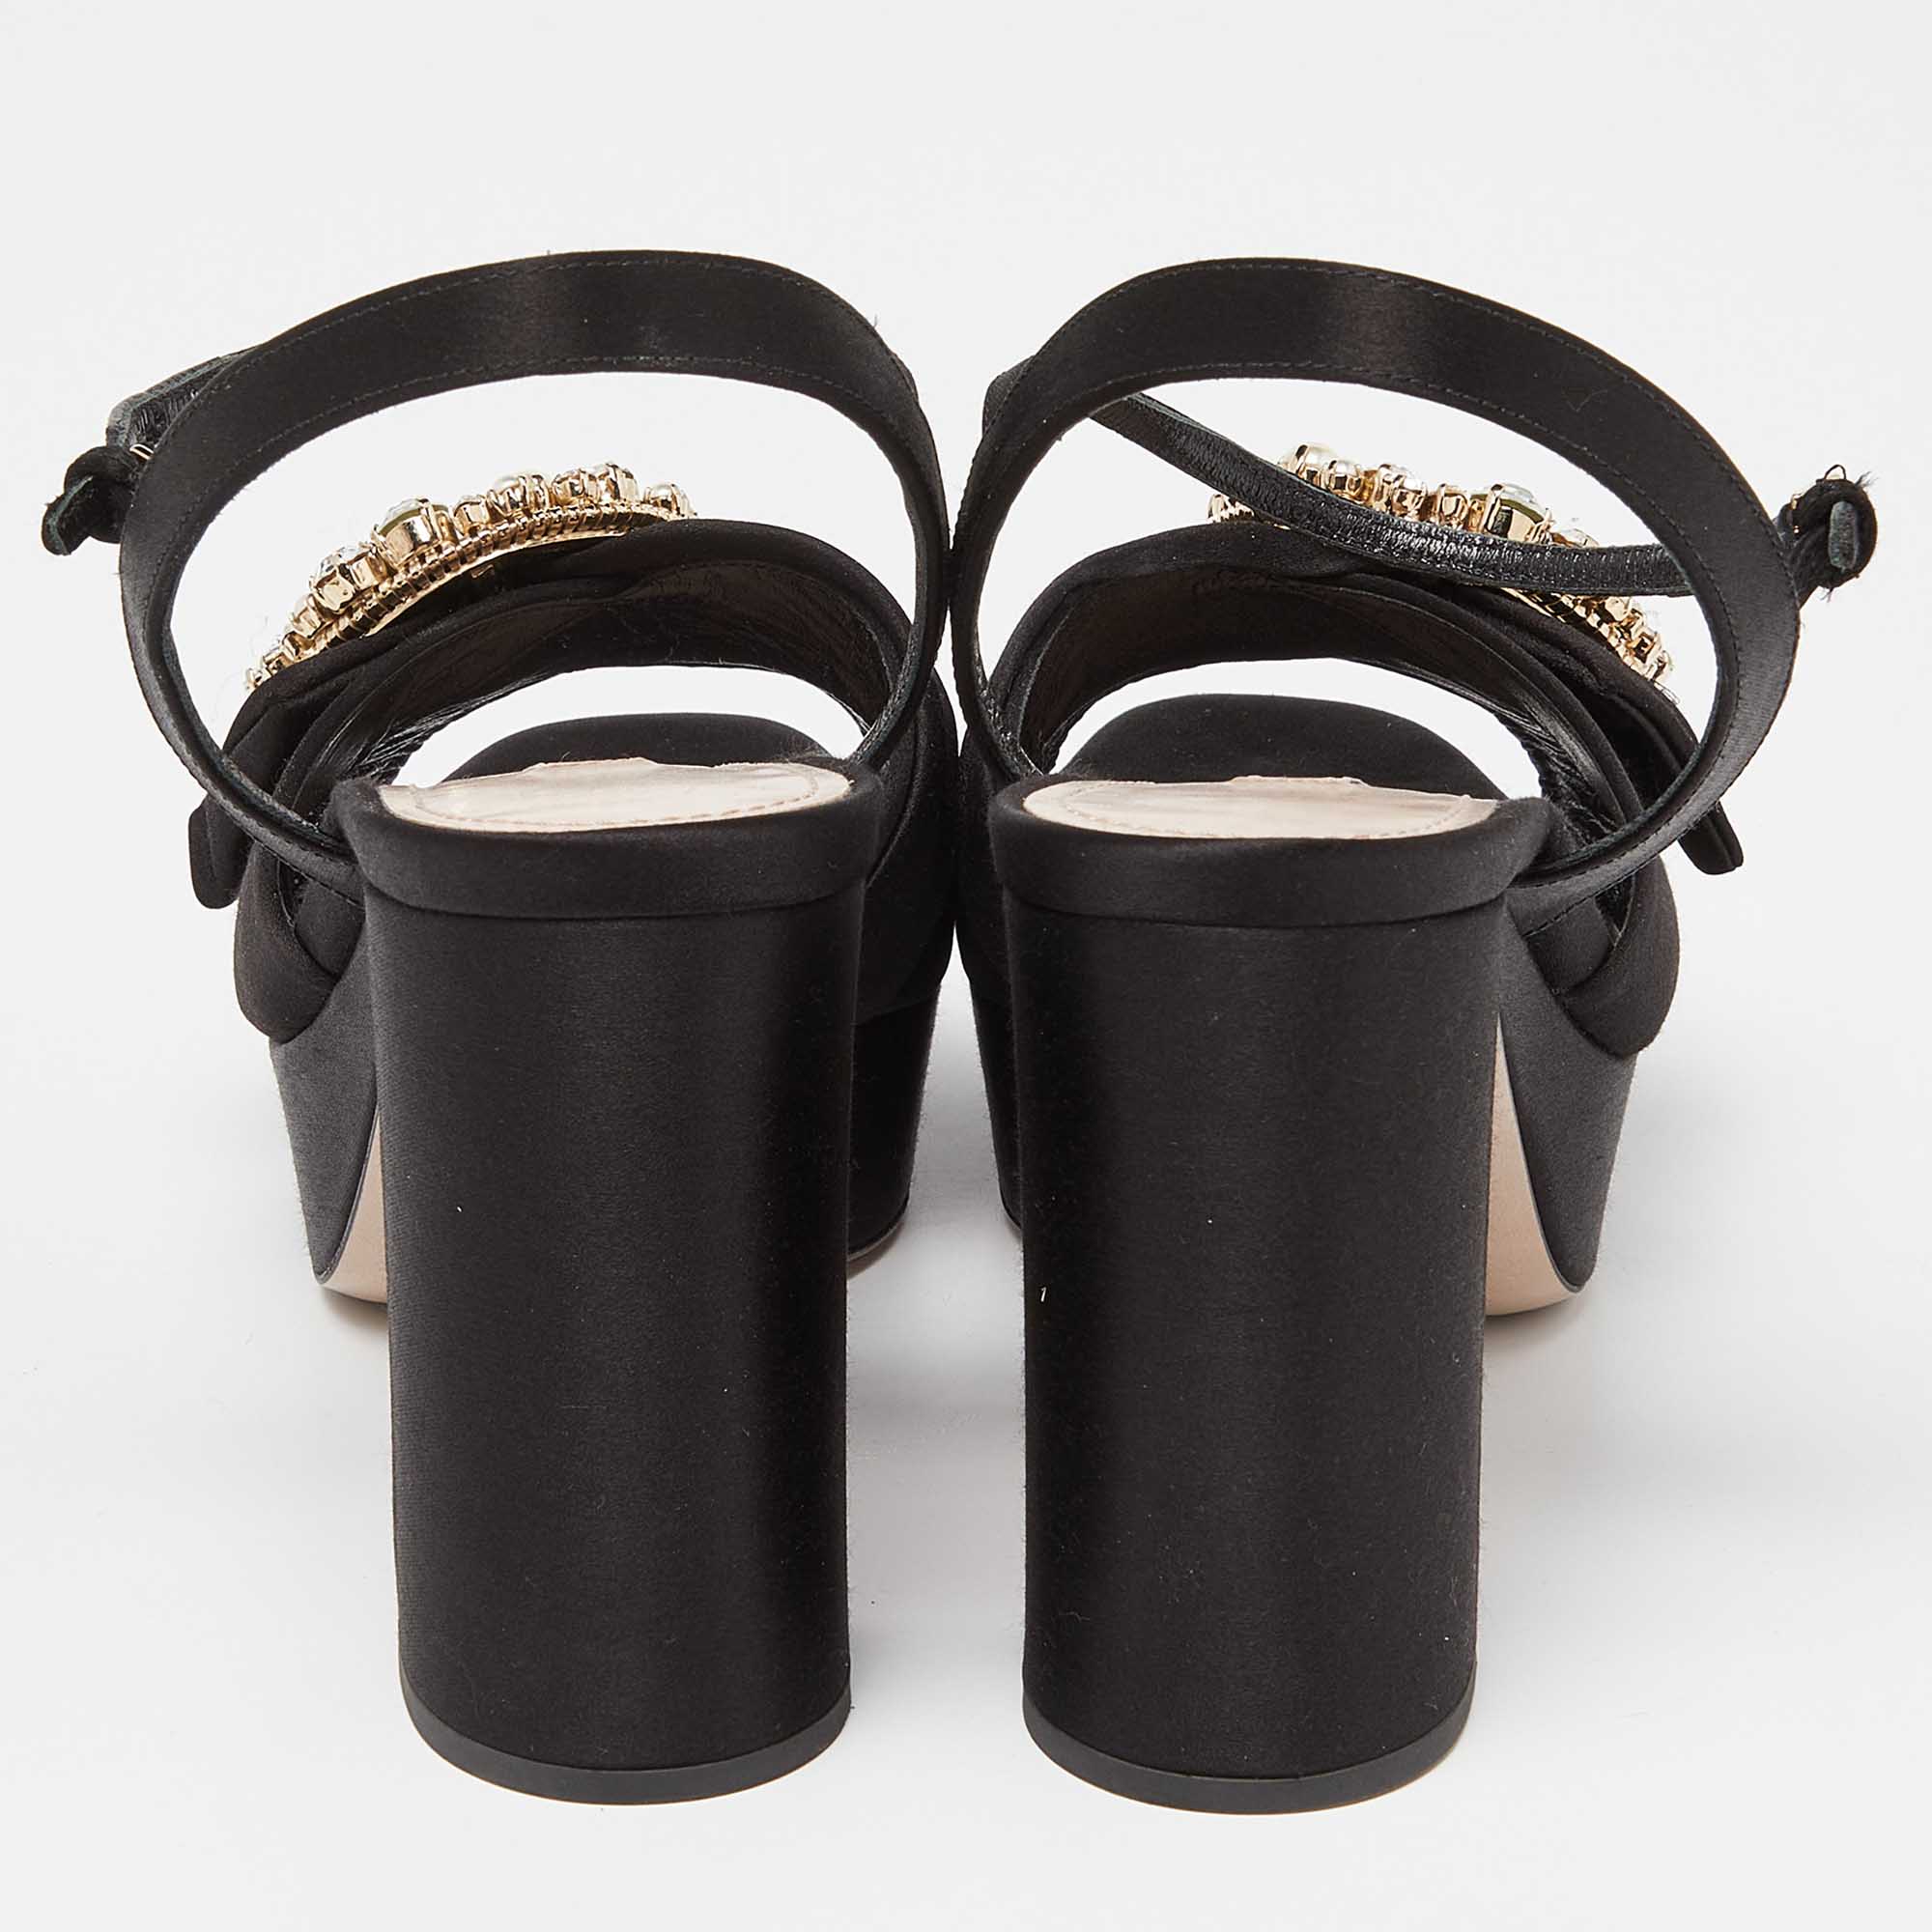 Miu Miu Black Satin Crystal Embellished Block Heel Ankle Strap Platform Sandals Size 39